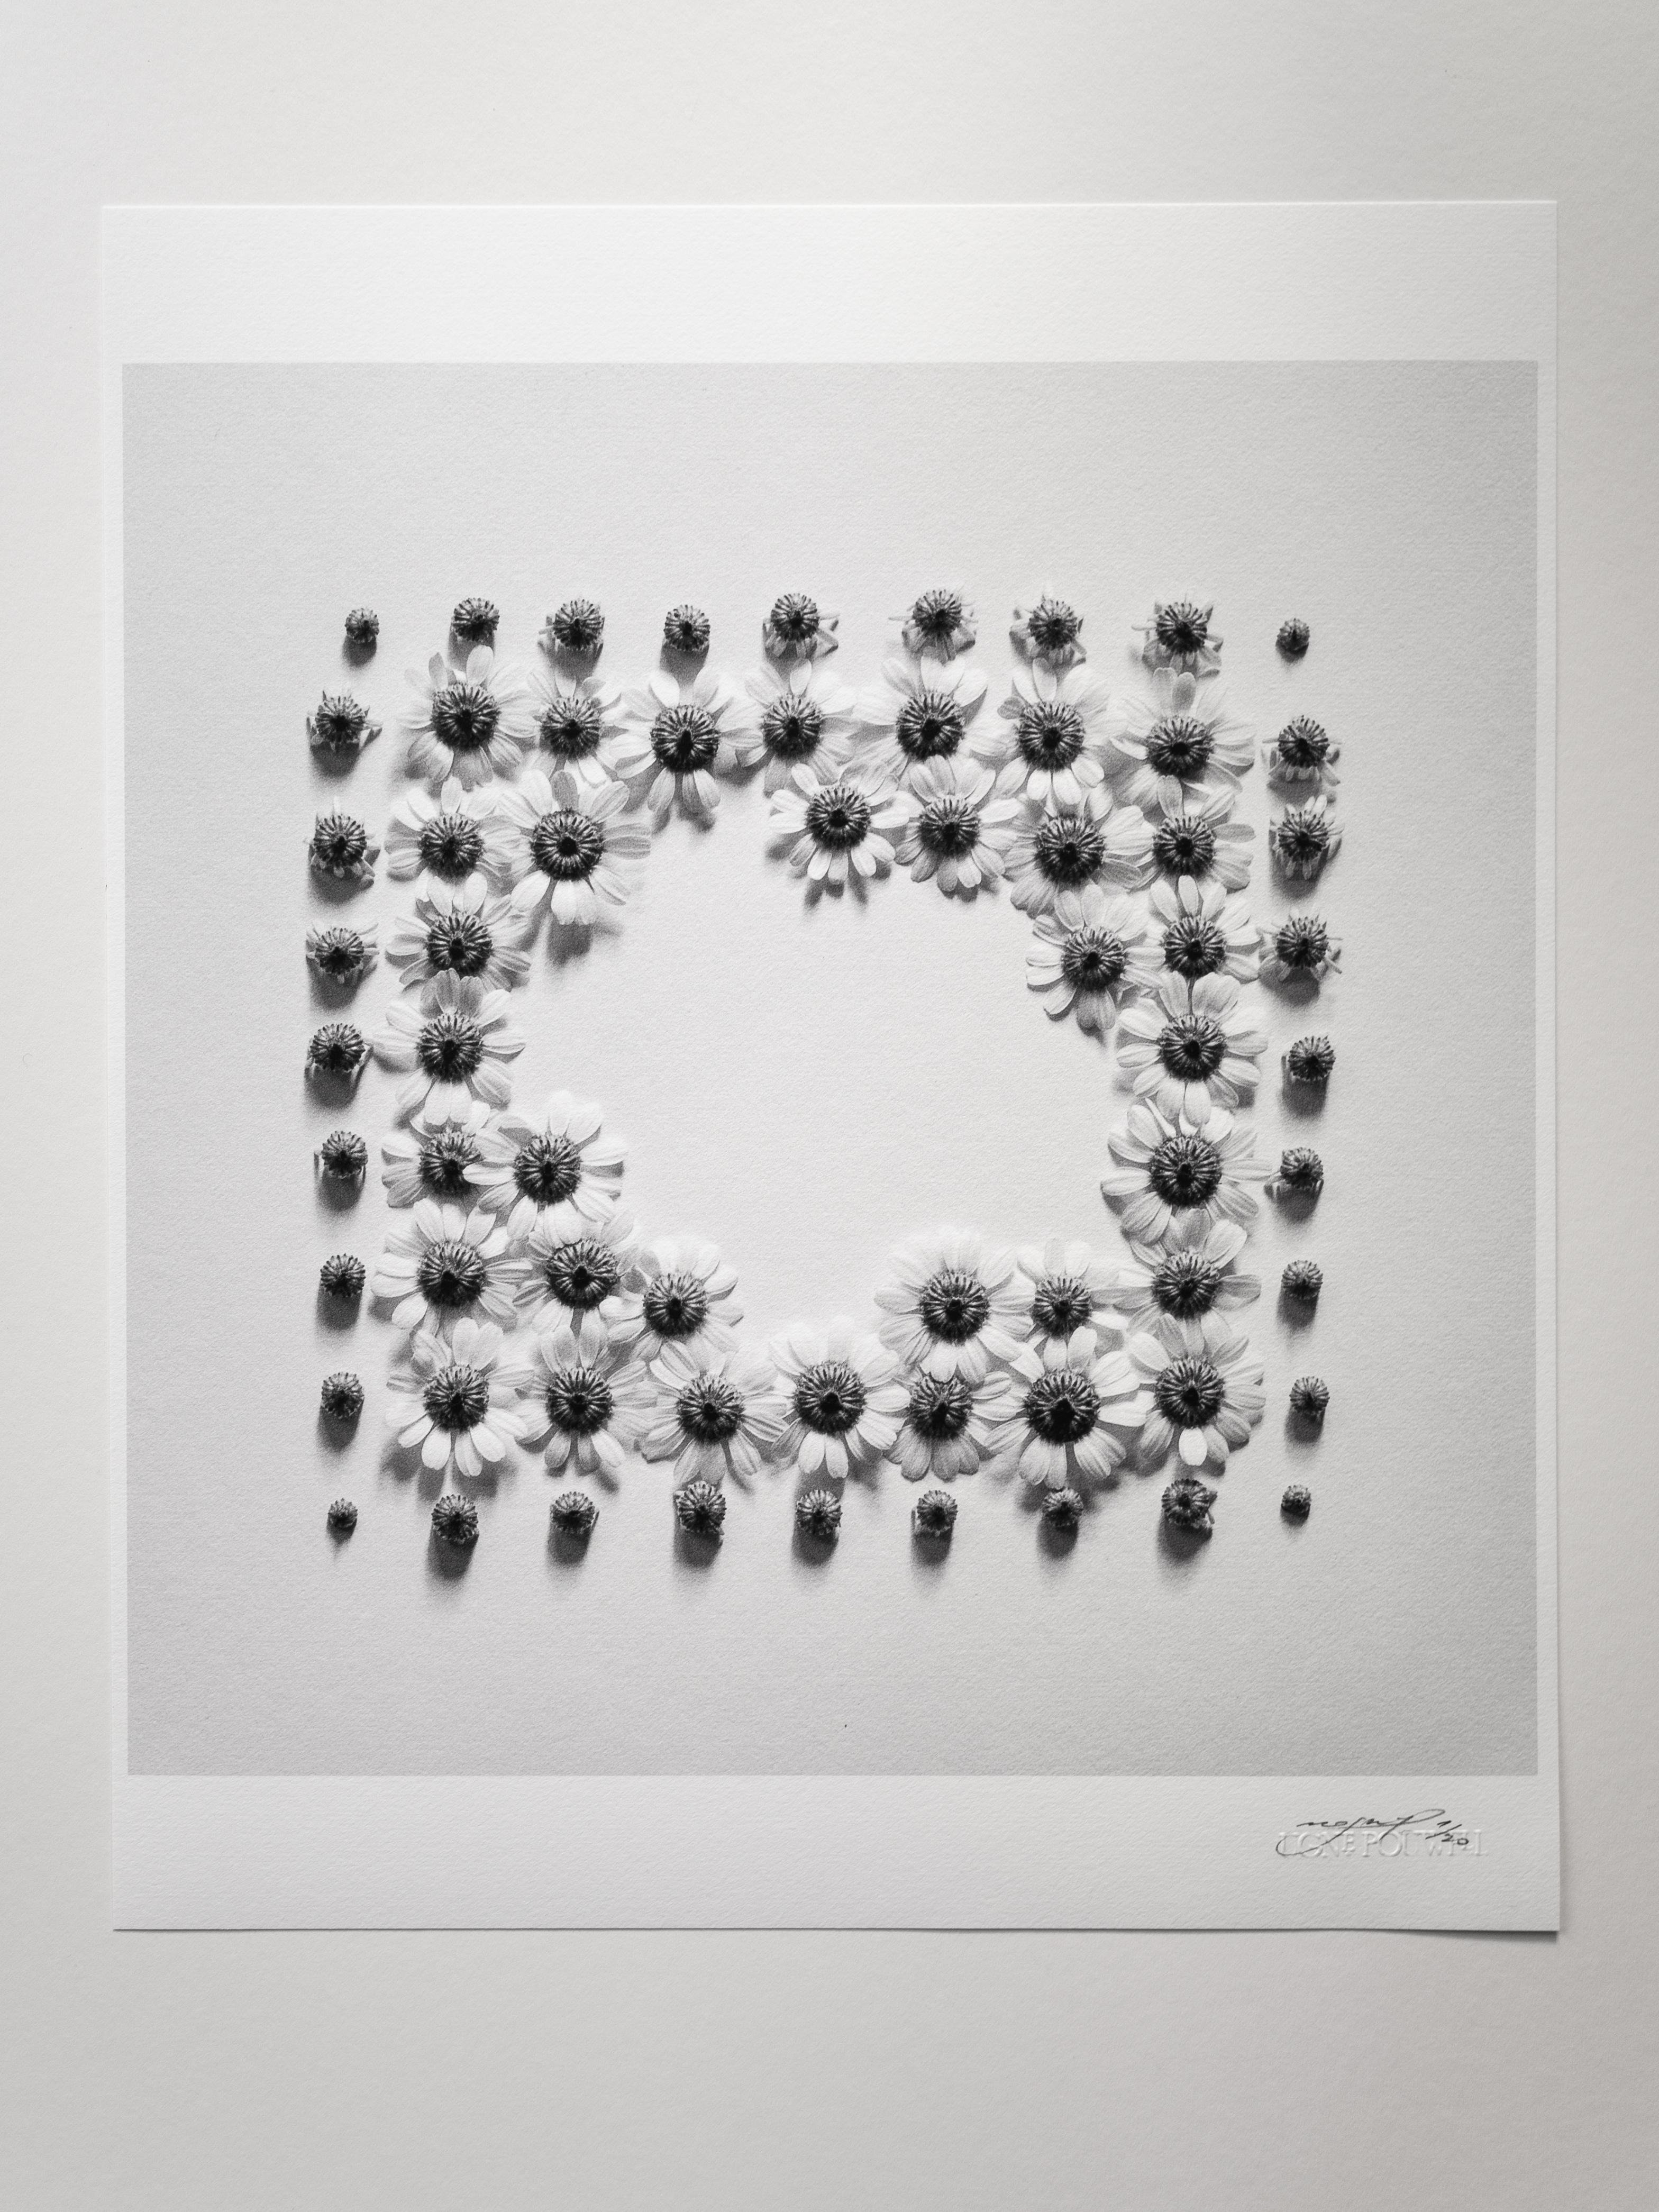 Ramunės - abstrakte analoge Schwarz-Weiß-Blumenfotografie, Ltd. 20 – Photograph von Ugne Pouwell